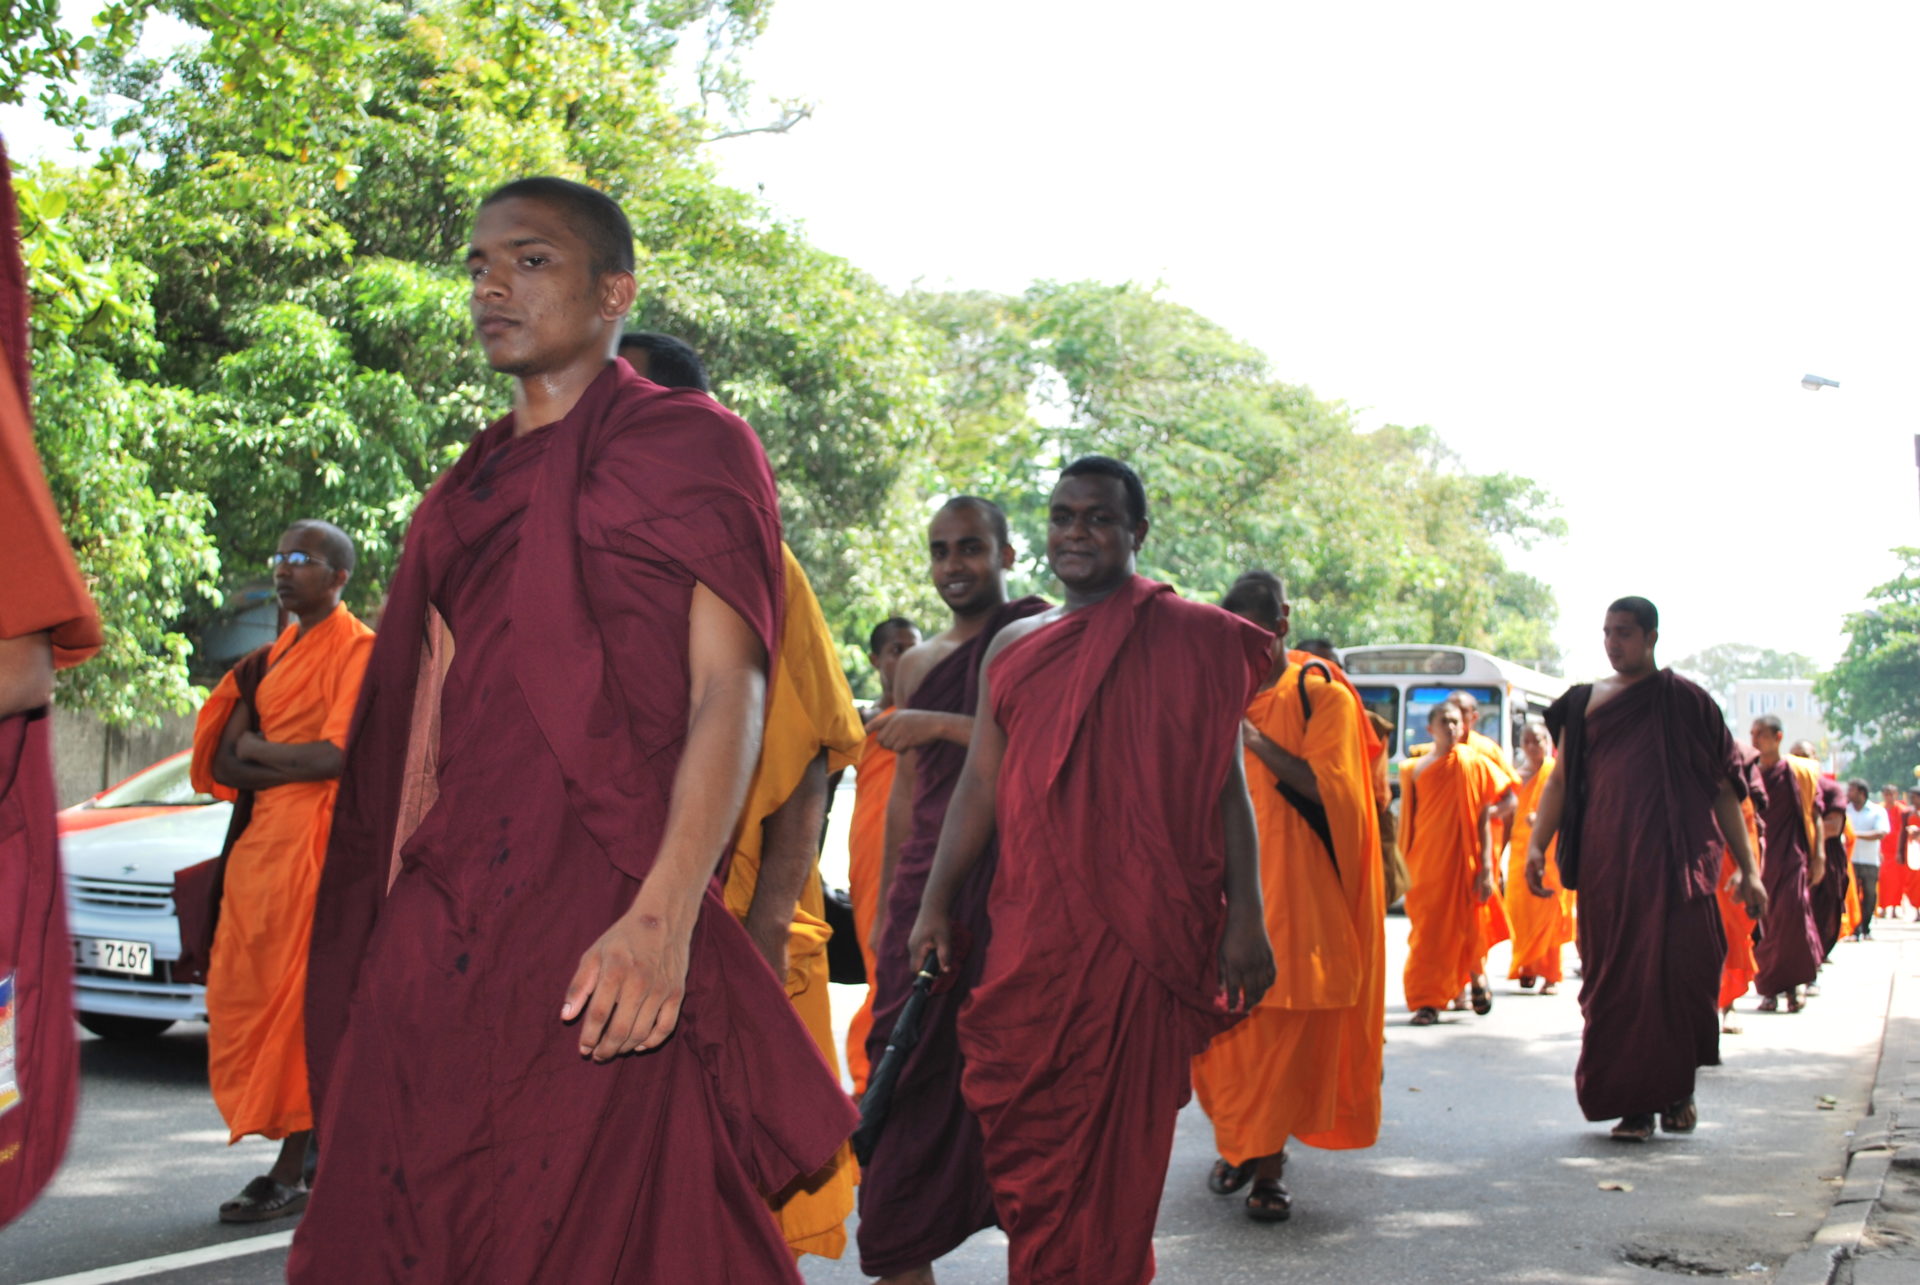 Les bouddhistes représentent 75% de la population sri lankaise (Photo:Vikalpa/Flickr/CC BY-NC 2.0)